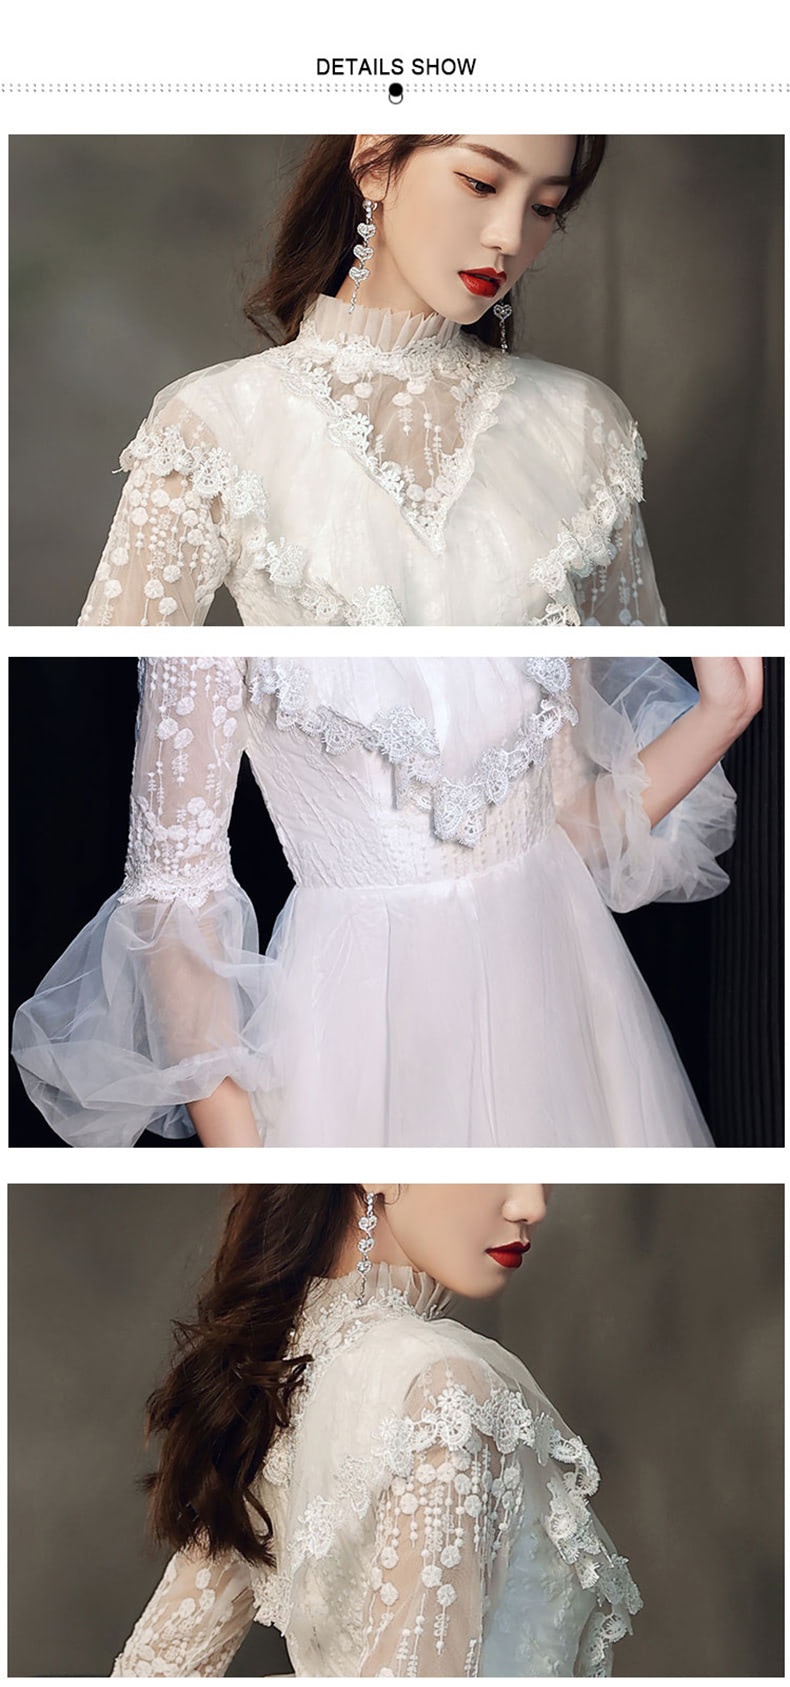 Elegant-Long-Sleeve-White-Maxi-Dress-Prom-Dance-Ball-Gown14.jpg